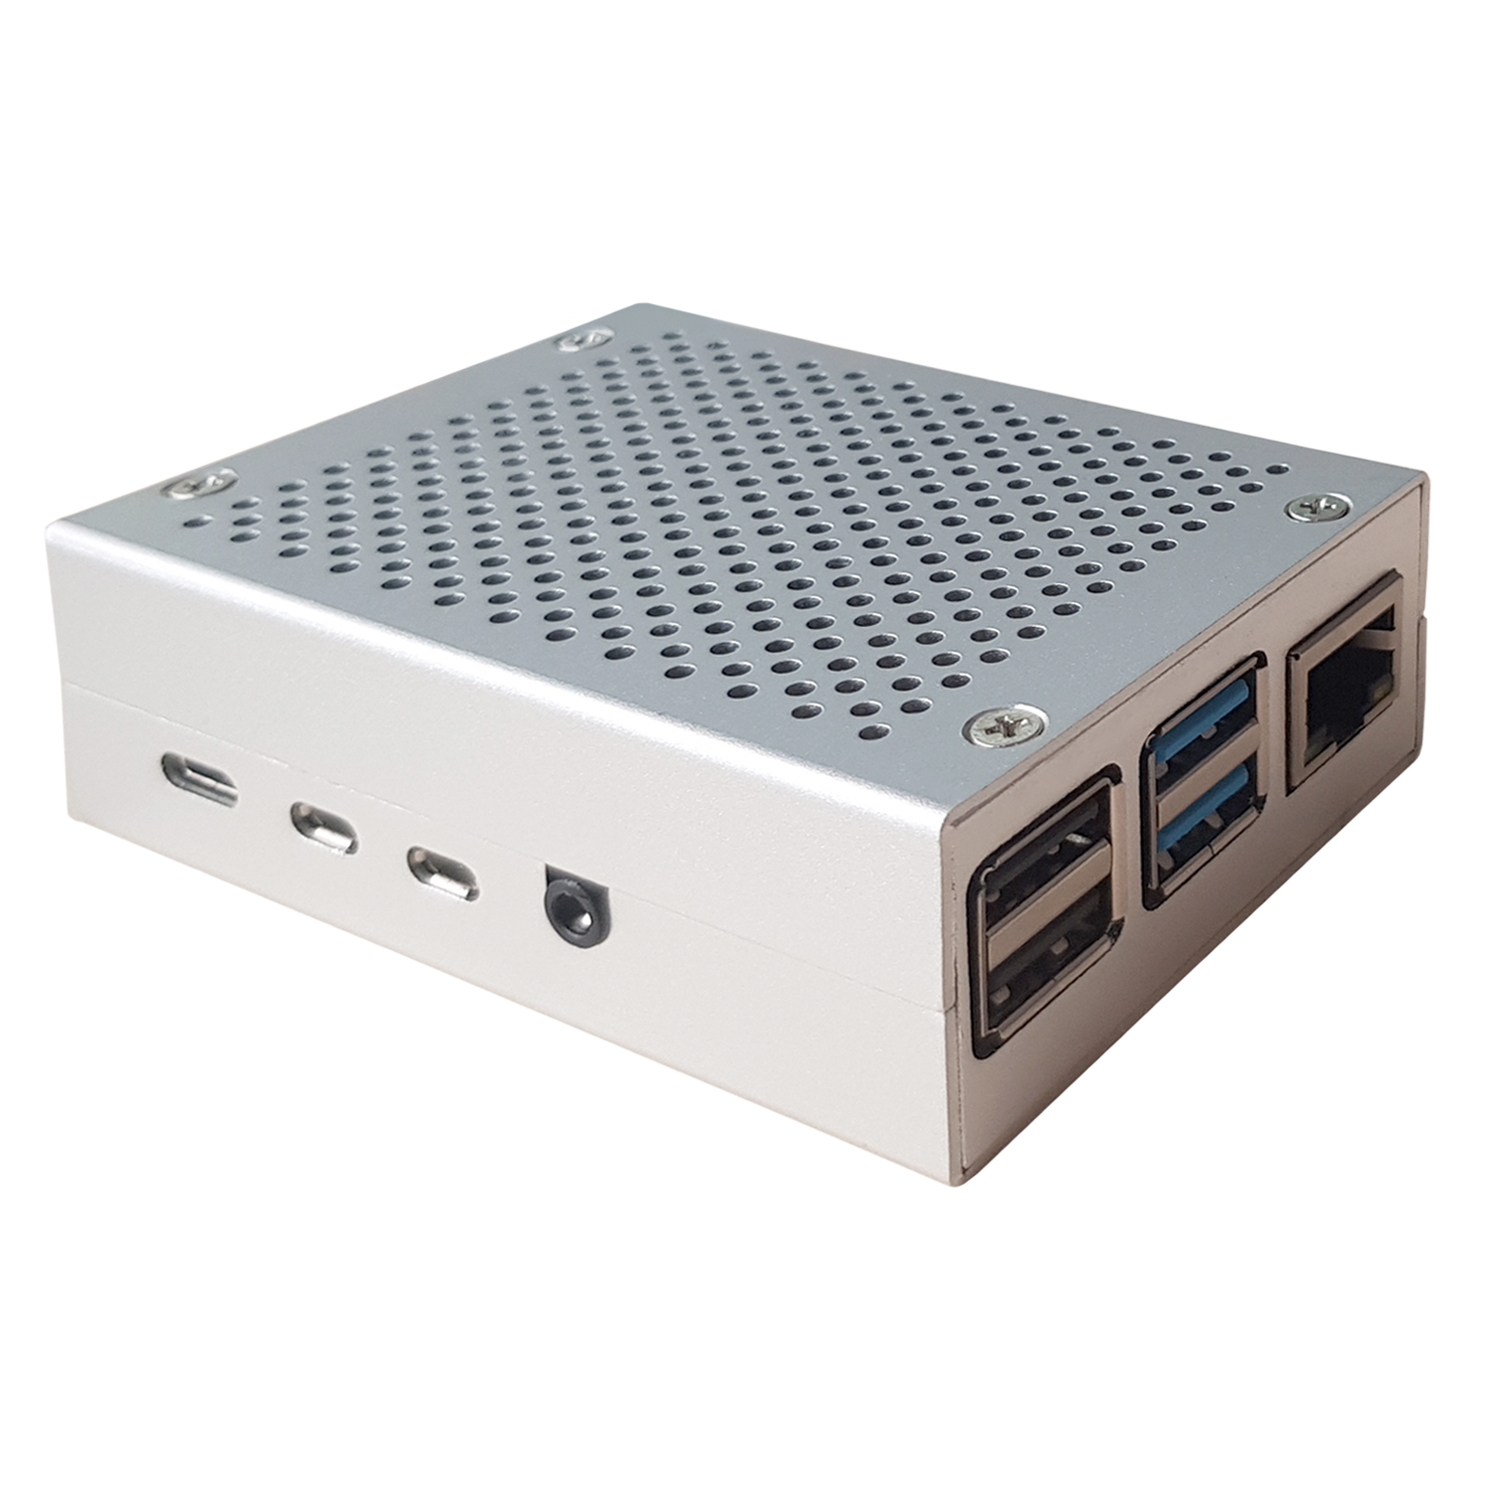 Miuzei 4B Passiv Cooling Aluminium Gehäuse für Raspberry Pi 4 Model B mit USB-C 5V 3,5A Netzteil EIN/AUS-Schalter 